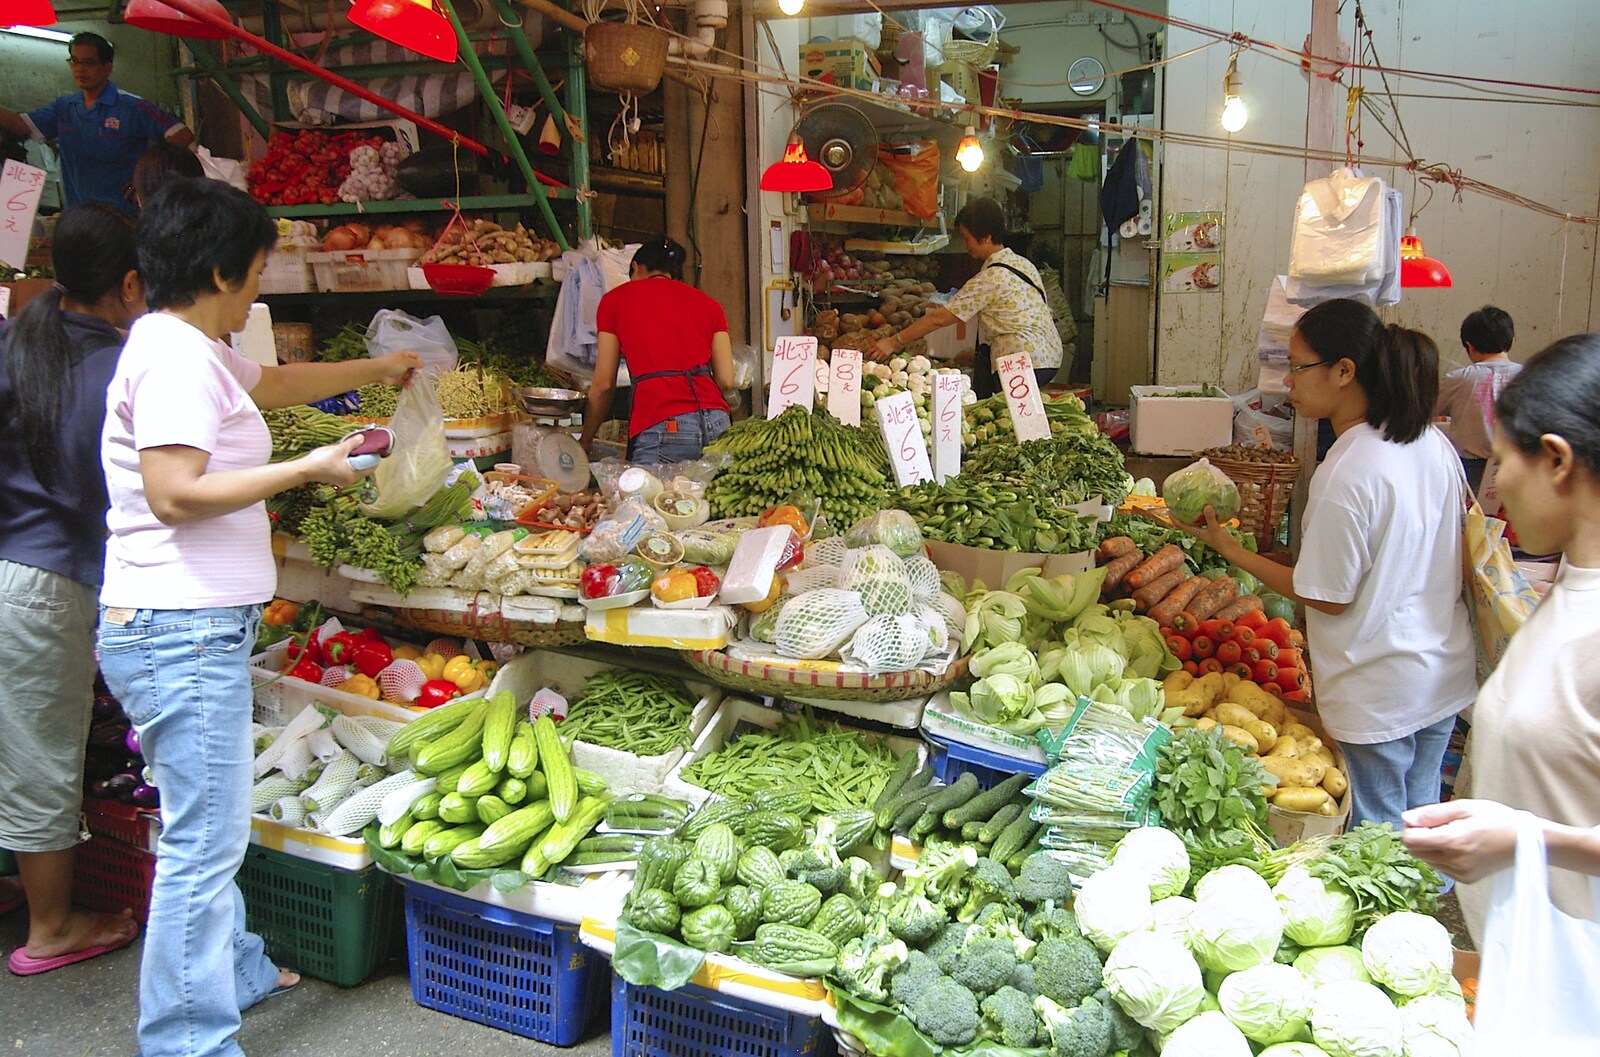 A final vegetable stall from Lan Kwai Fong Market, Hong Kong, China - 4th October 2006